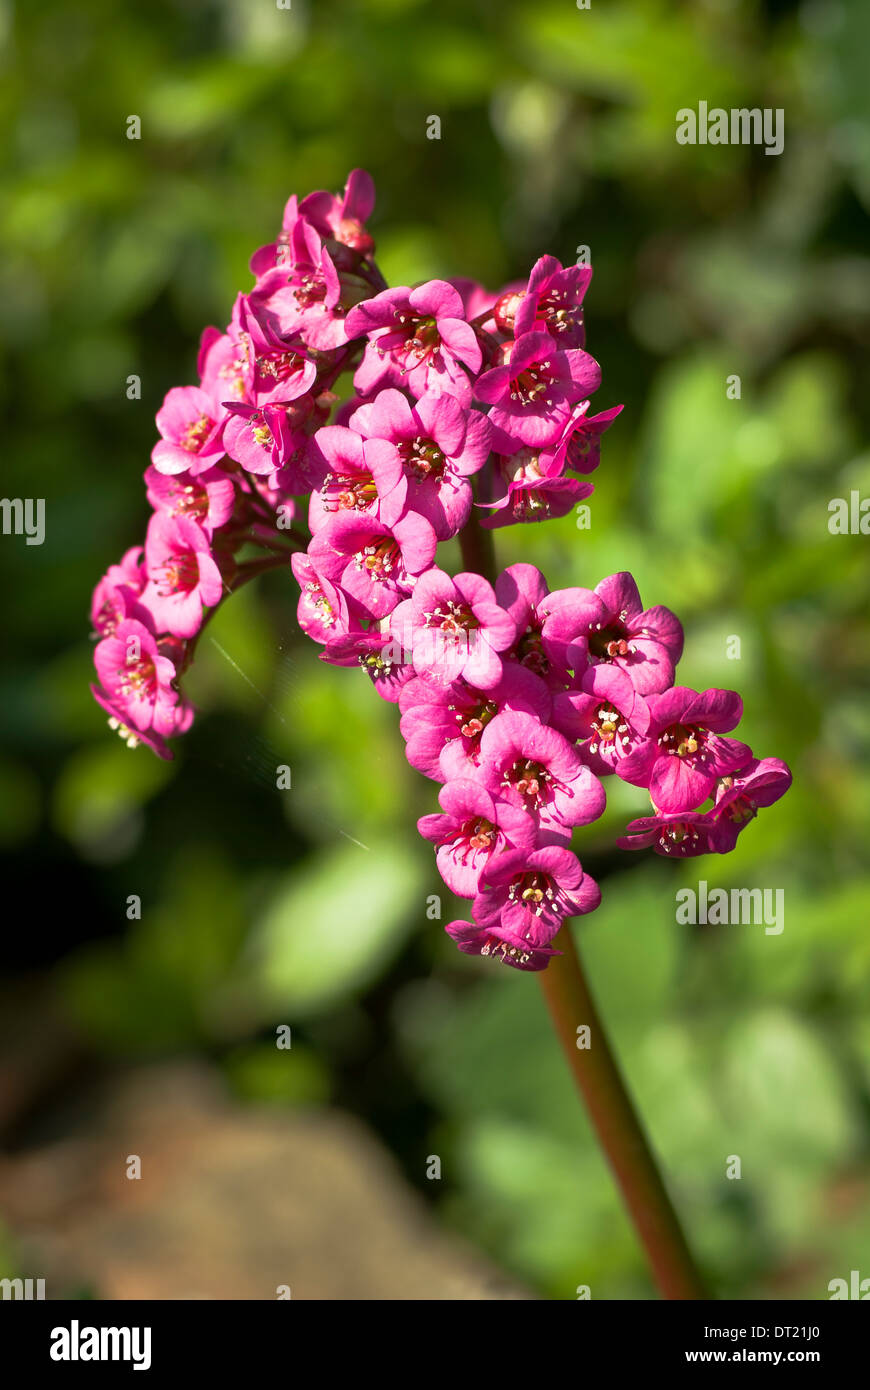 Pink BERGENIA flower Stock Photo